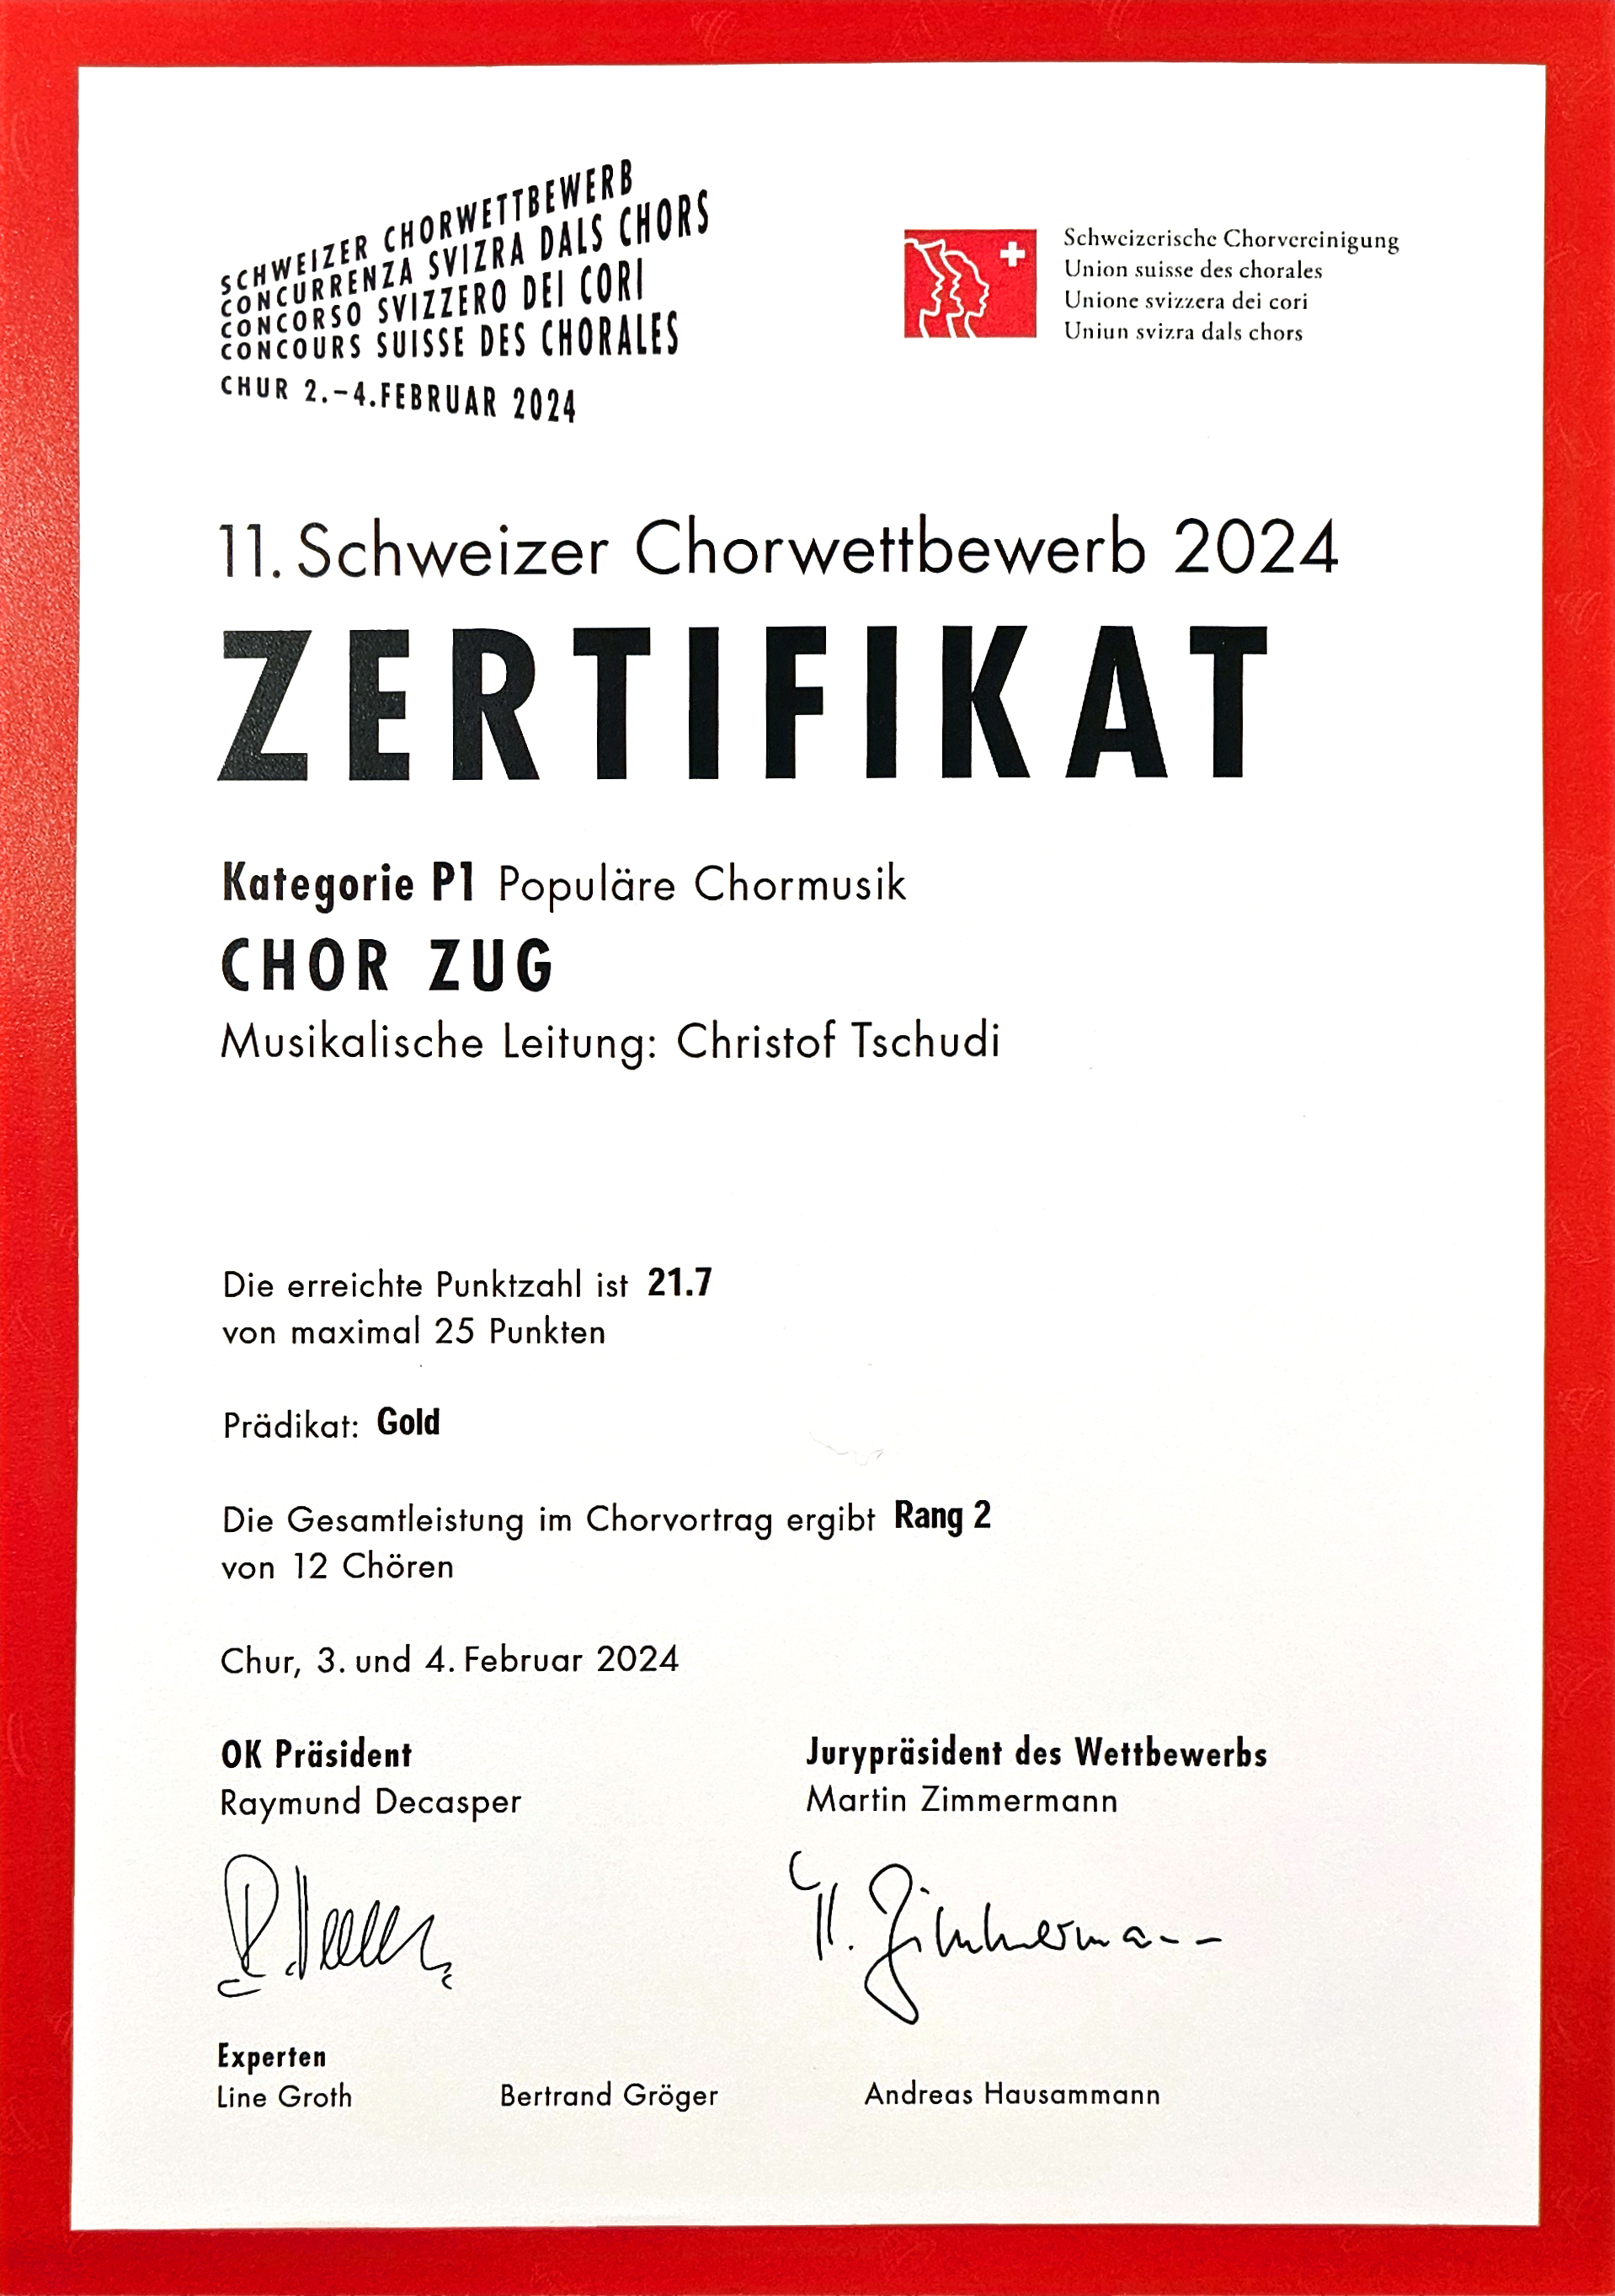 (c) Chorzug.ch